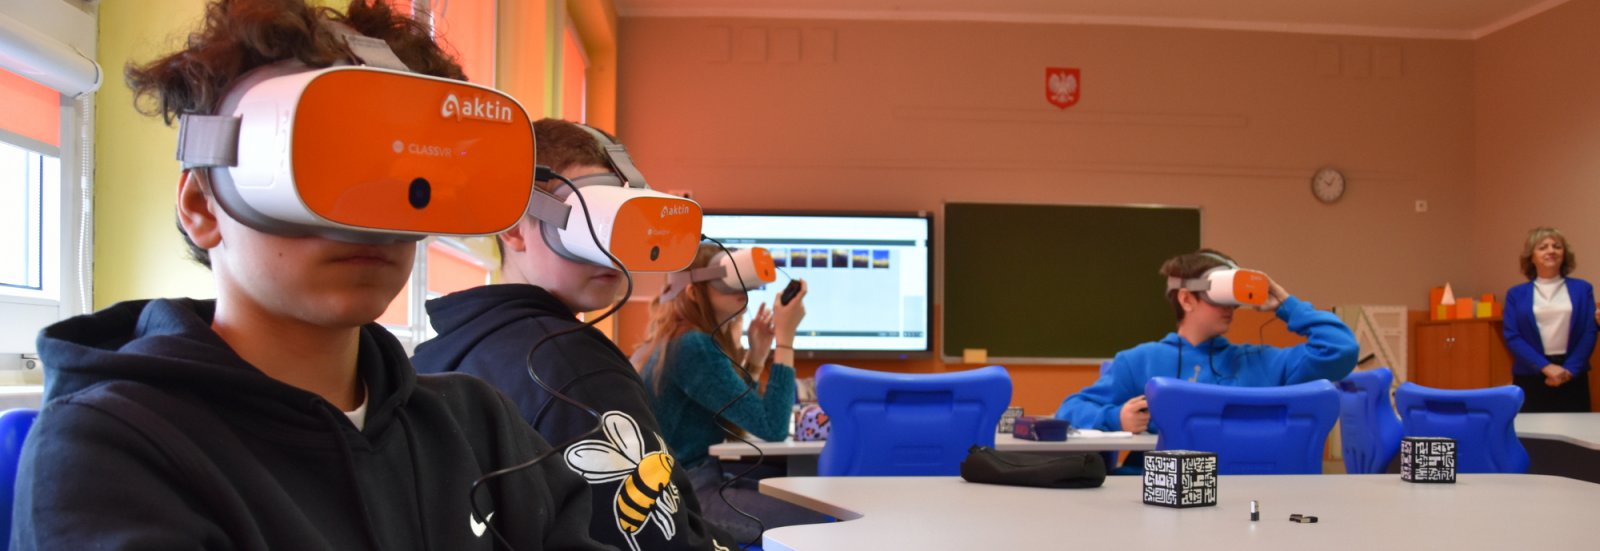 Uczniowie w klasie z założonymi okularami do wirtualnej rzeczywistości